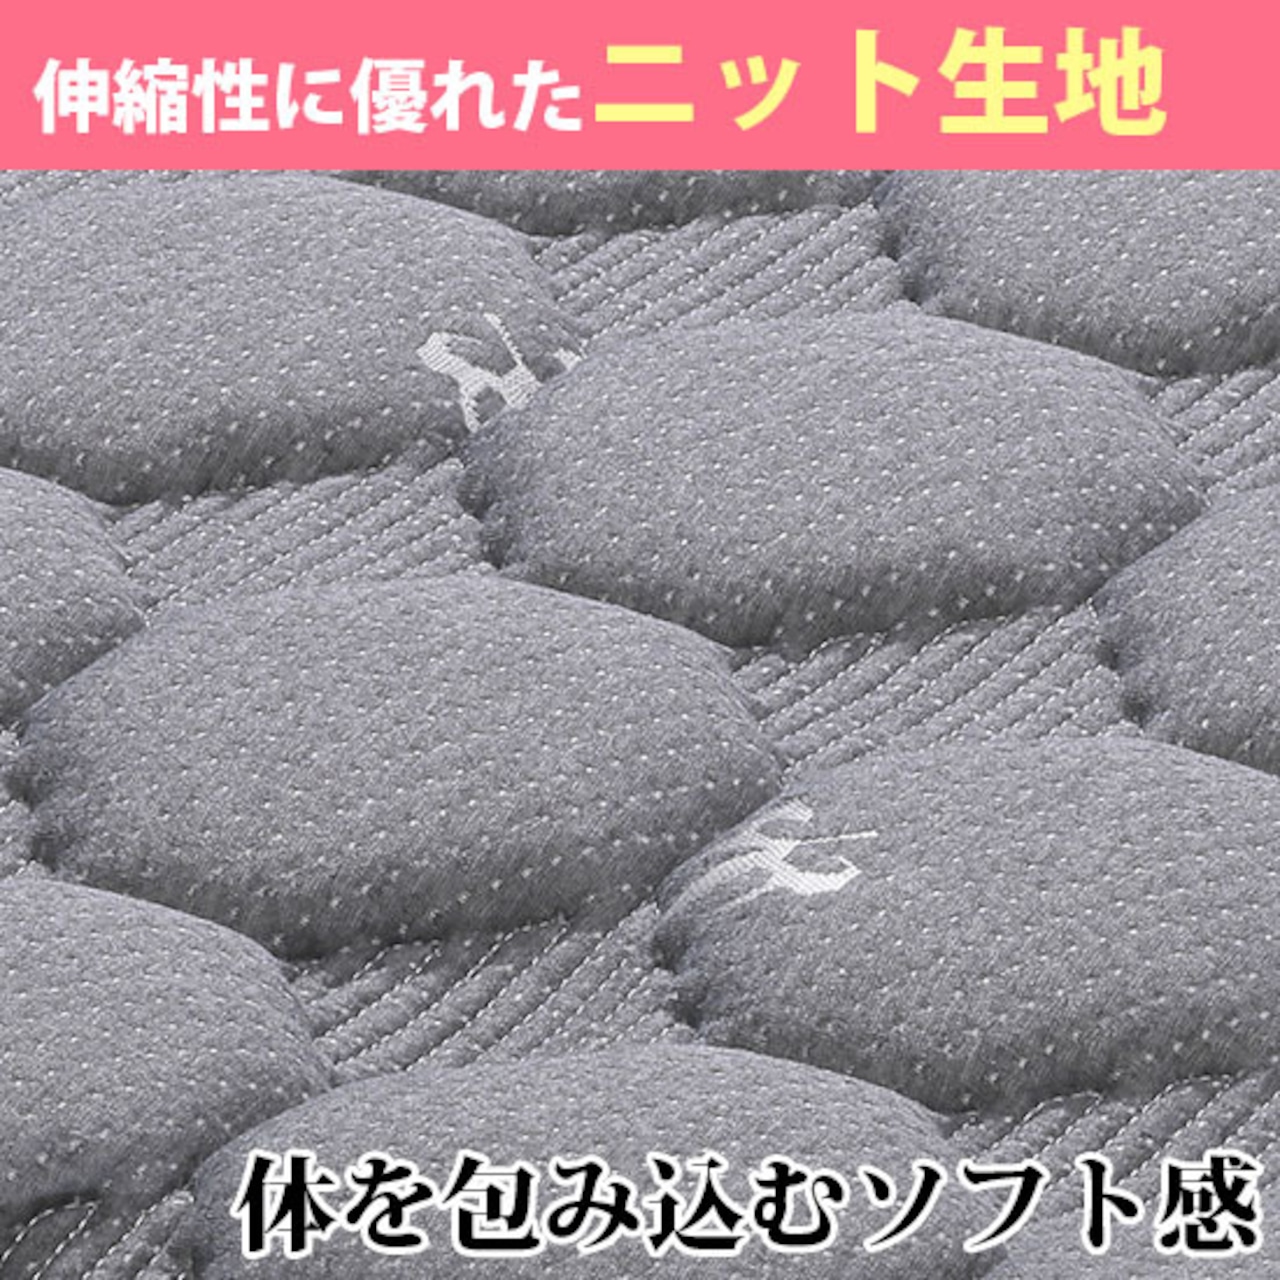 【セミダブル】マットレス SDマットレス ポケットコイル 寝具